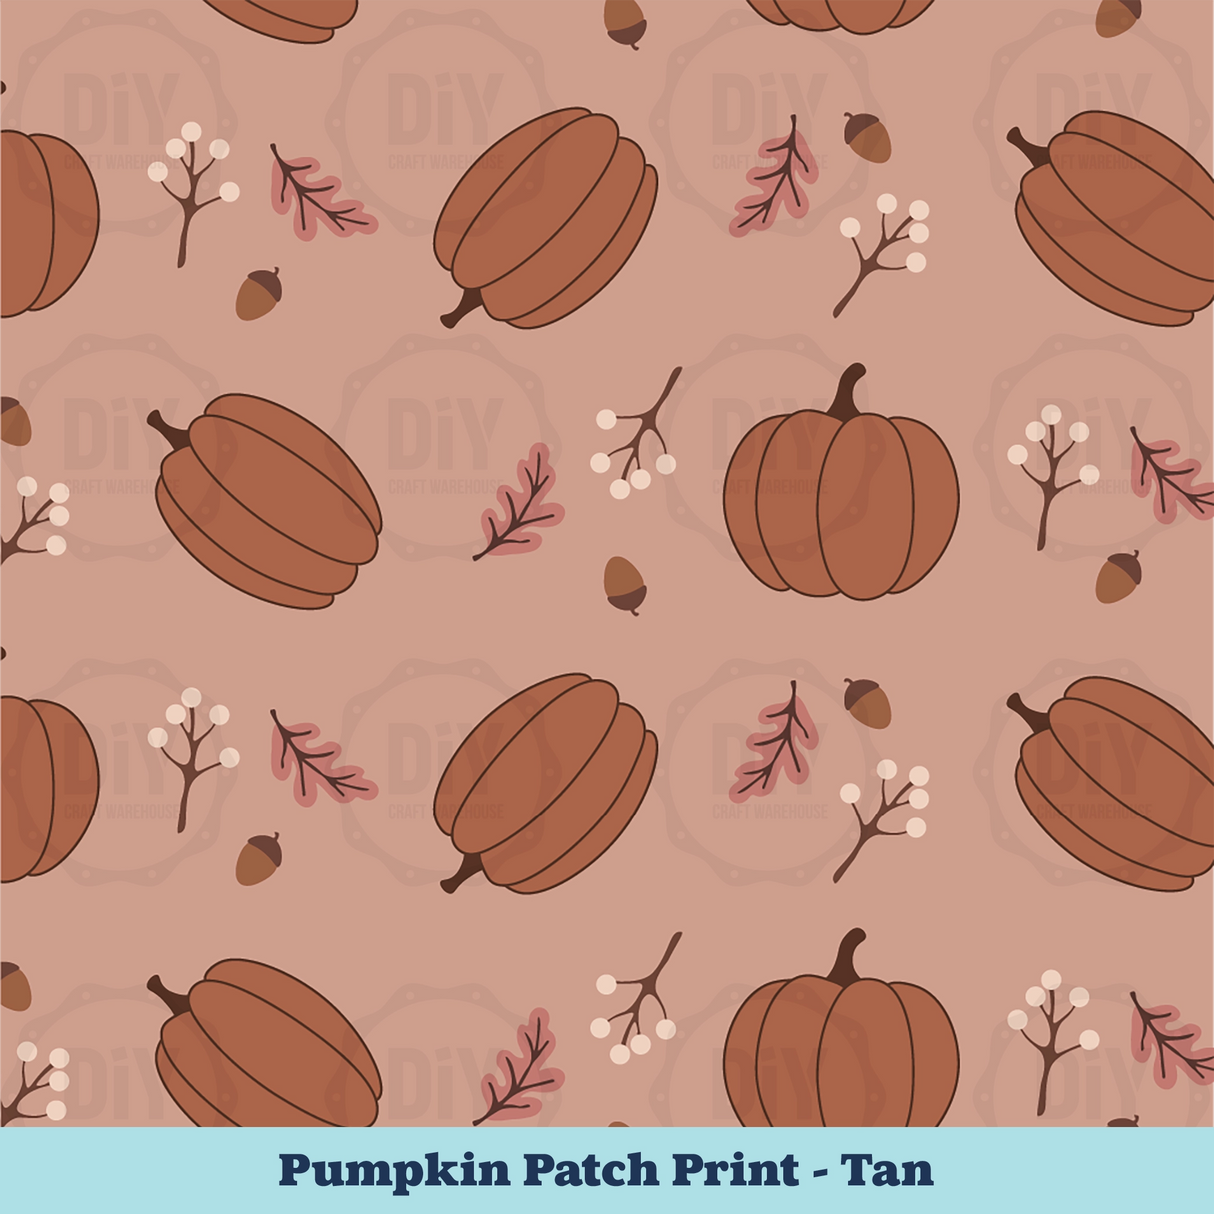 Pumpkin Patch Sublimation Transfer - Tan